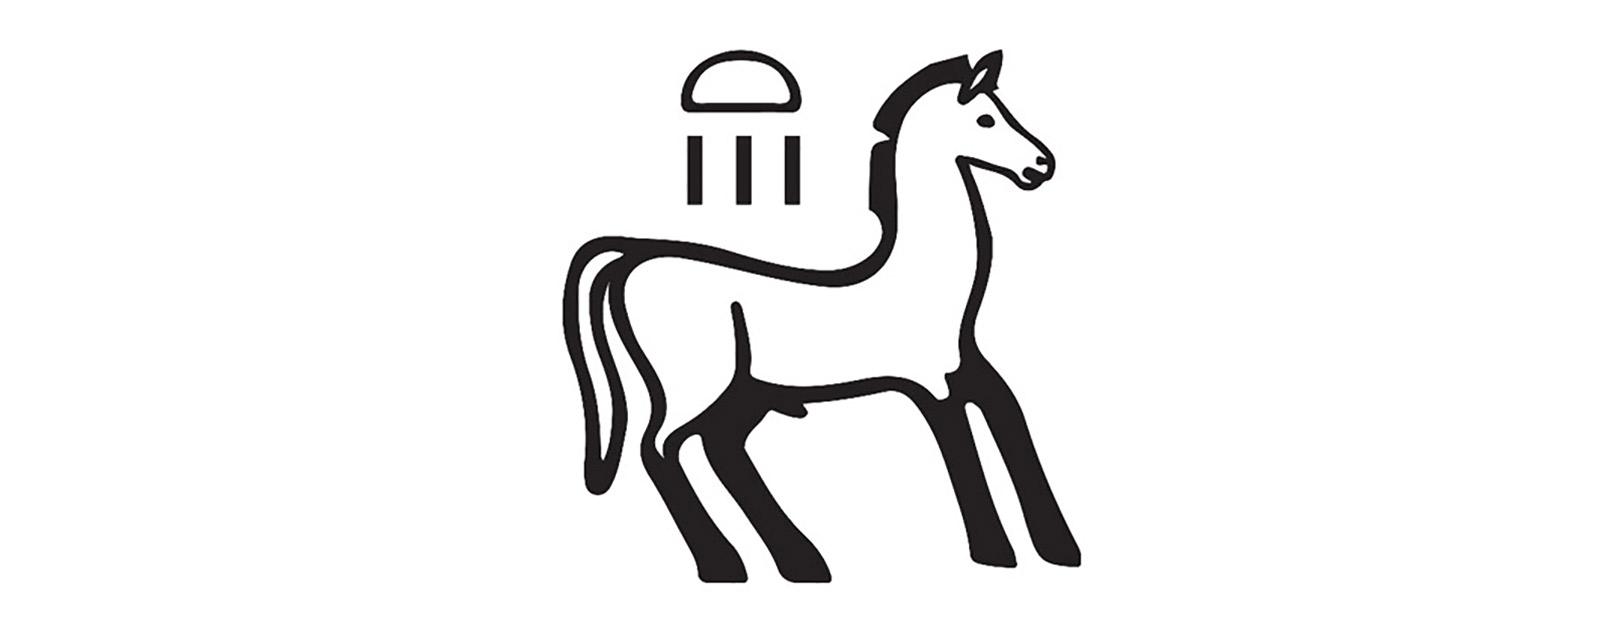 A hieroglyph of a horse.